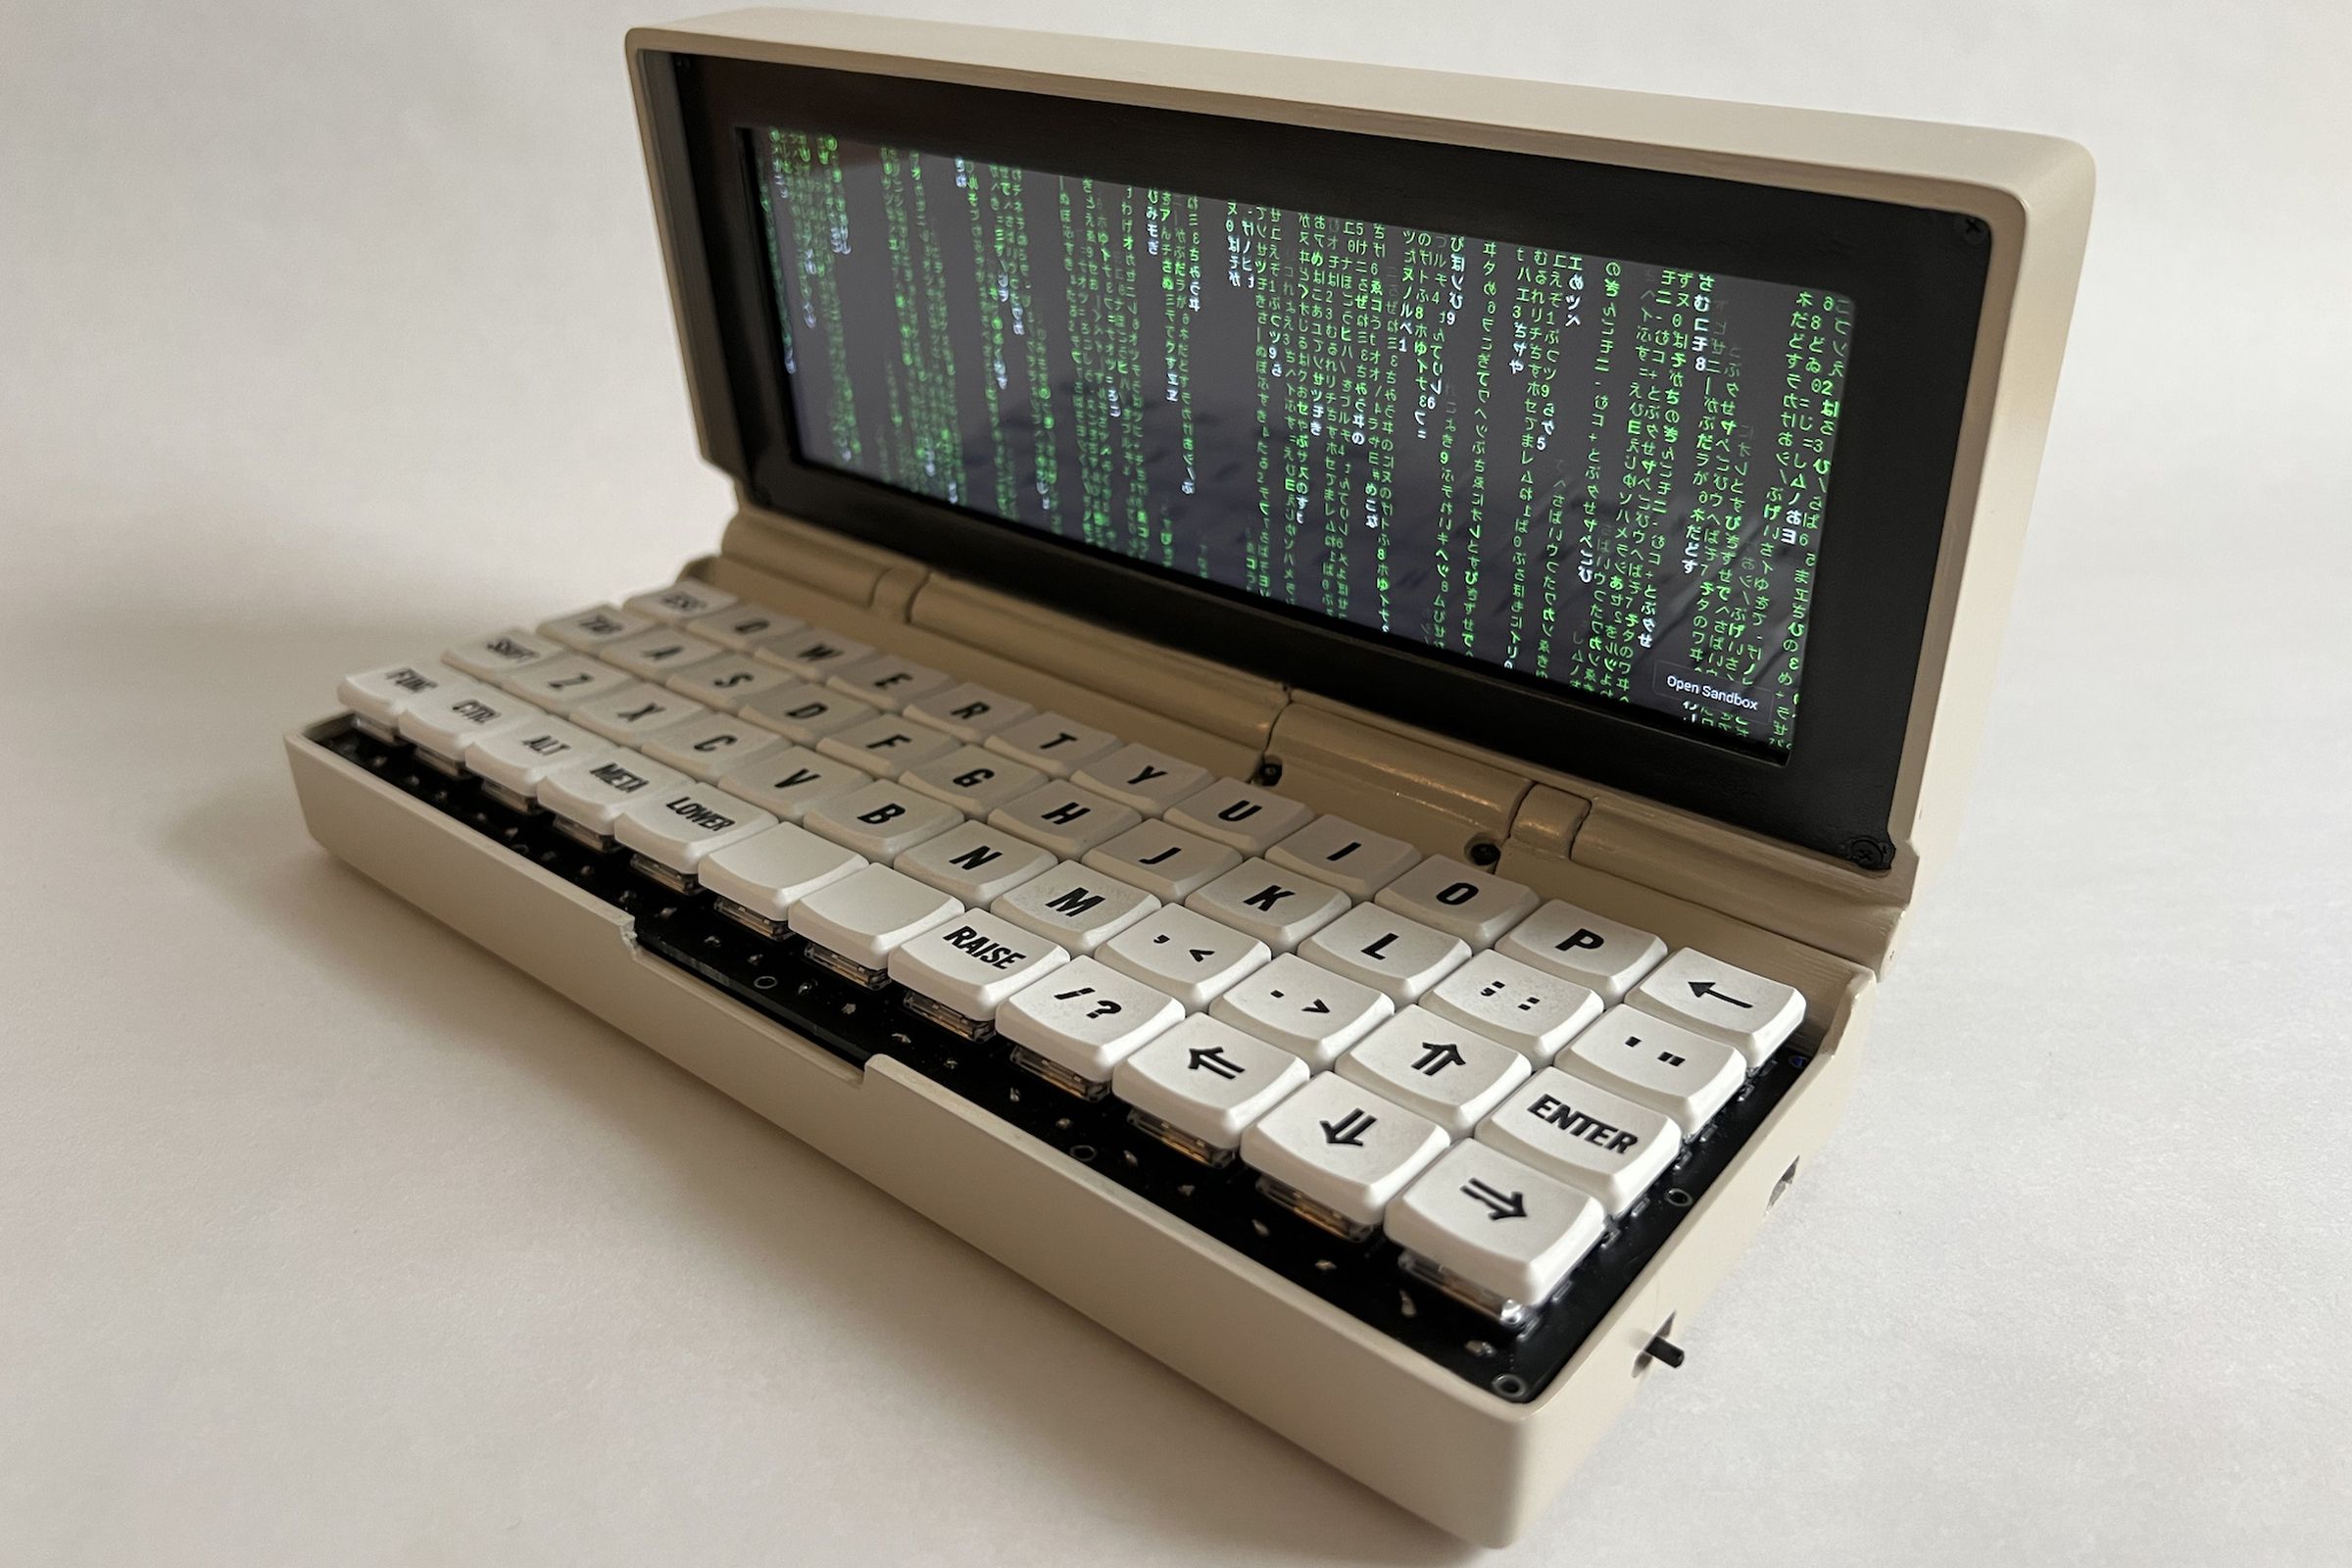 The Penkesu custom handheld computer